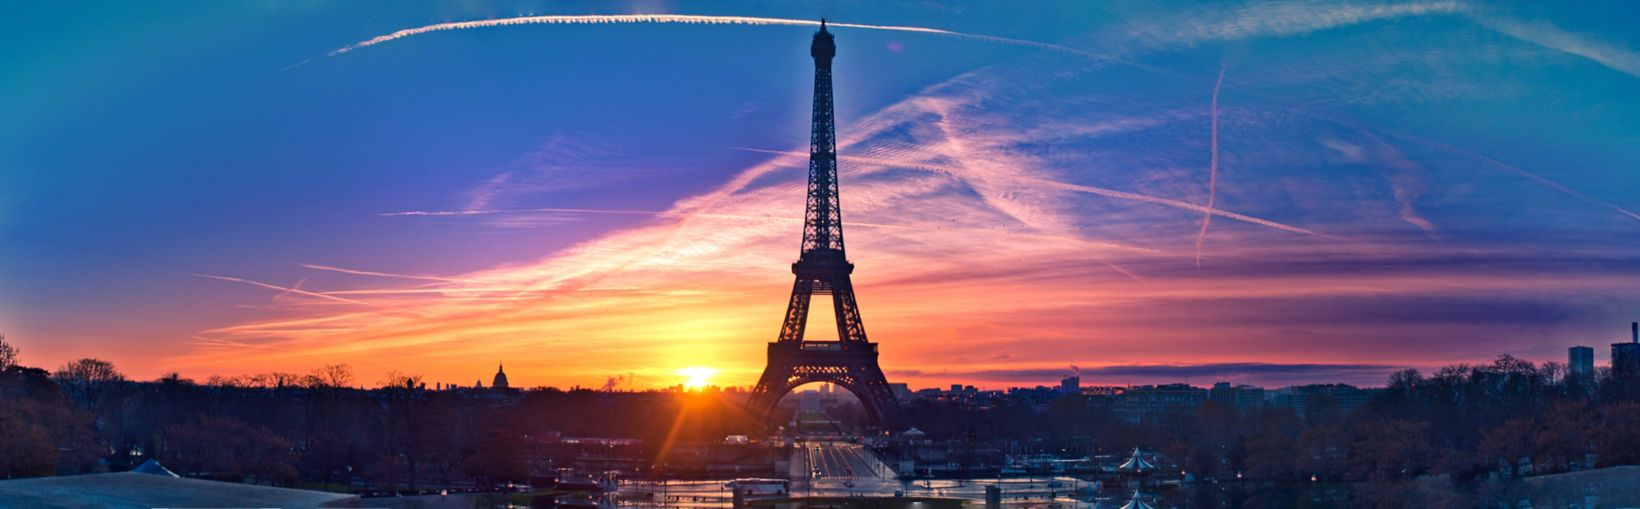 Fantastisk panorama af Paris meget tidligt om morgenen, med Eiffeltårnet inkluderet